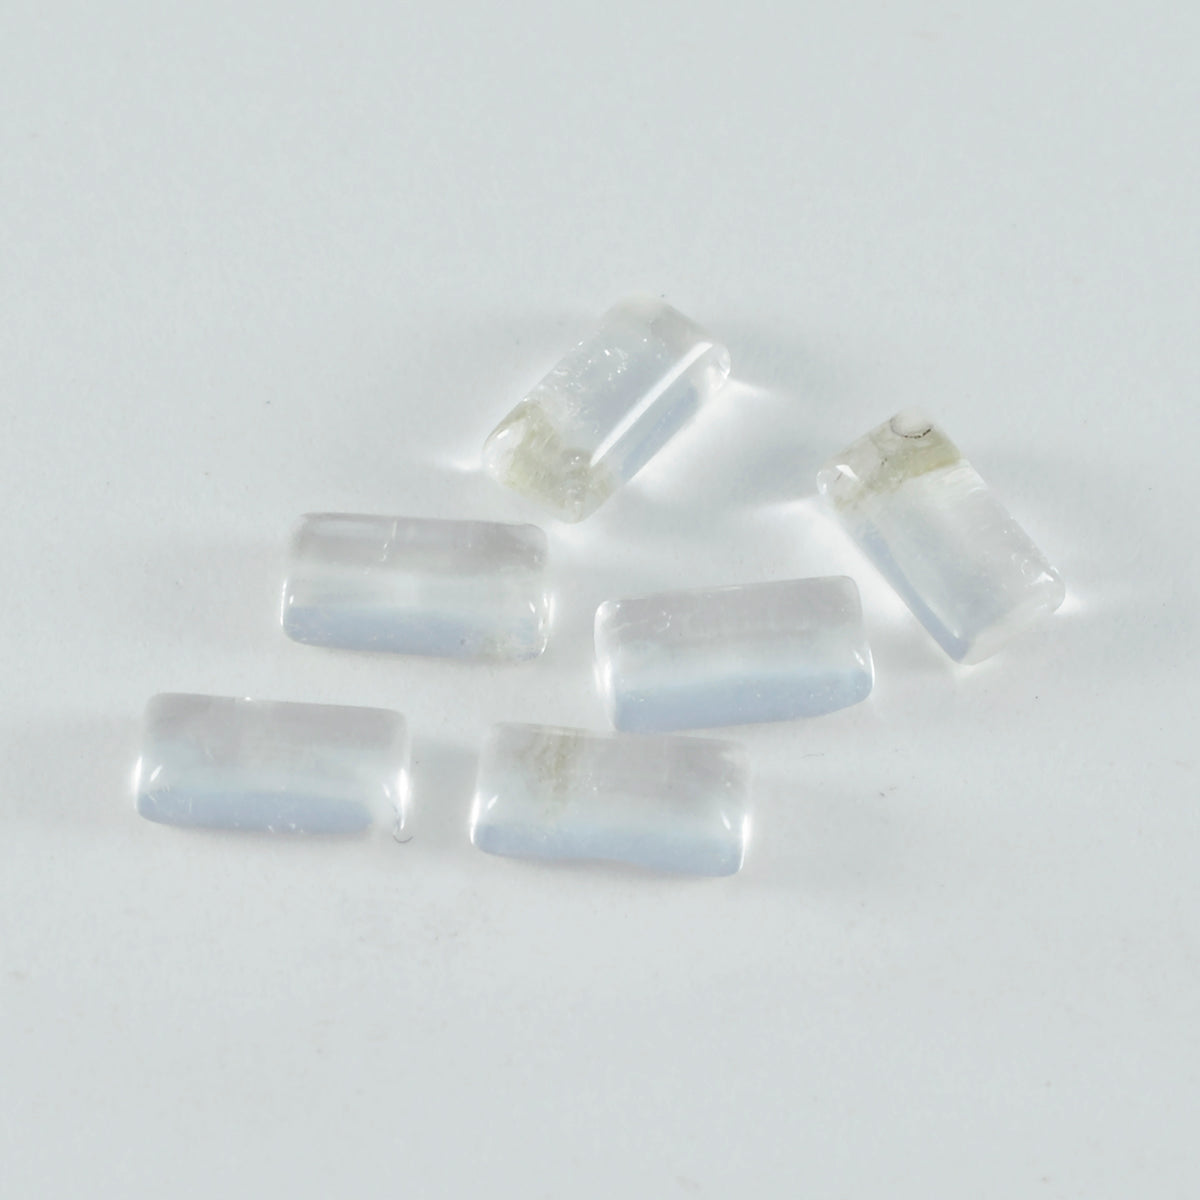 Riyogems 1 cabujón de cuarzo de cristal blanco de 0.236 x 0.472 in, forma baguett, calidad A1, piedra preciosa suelta